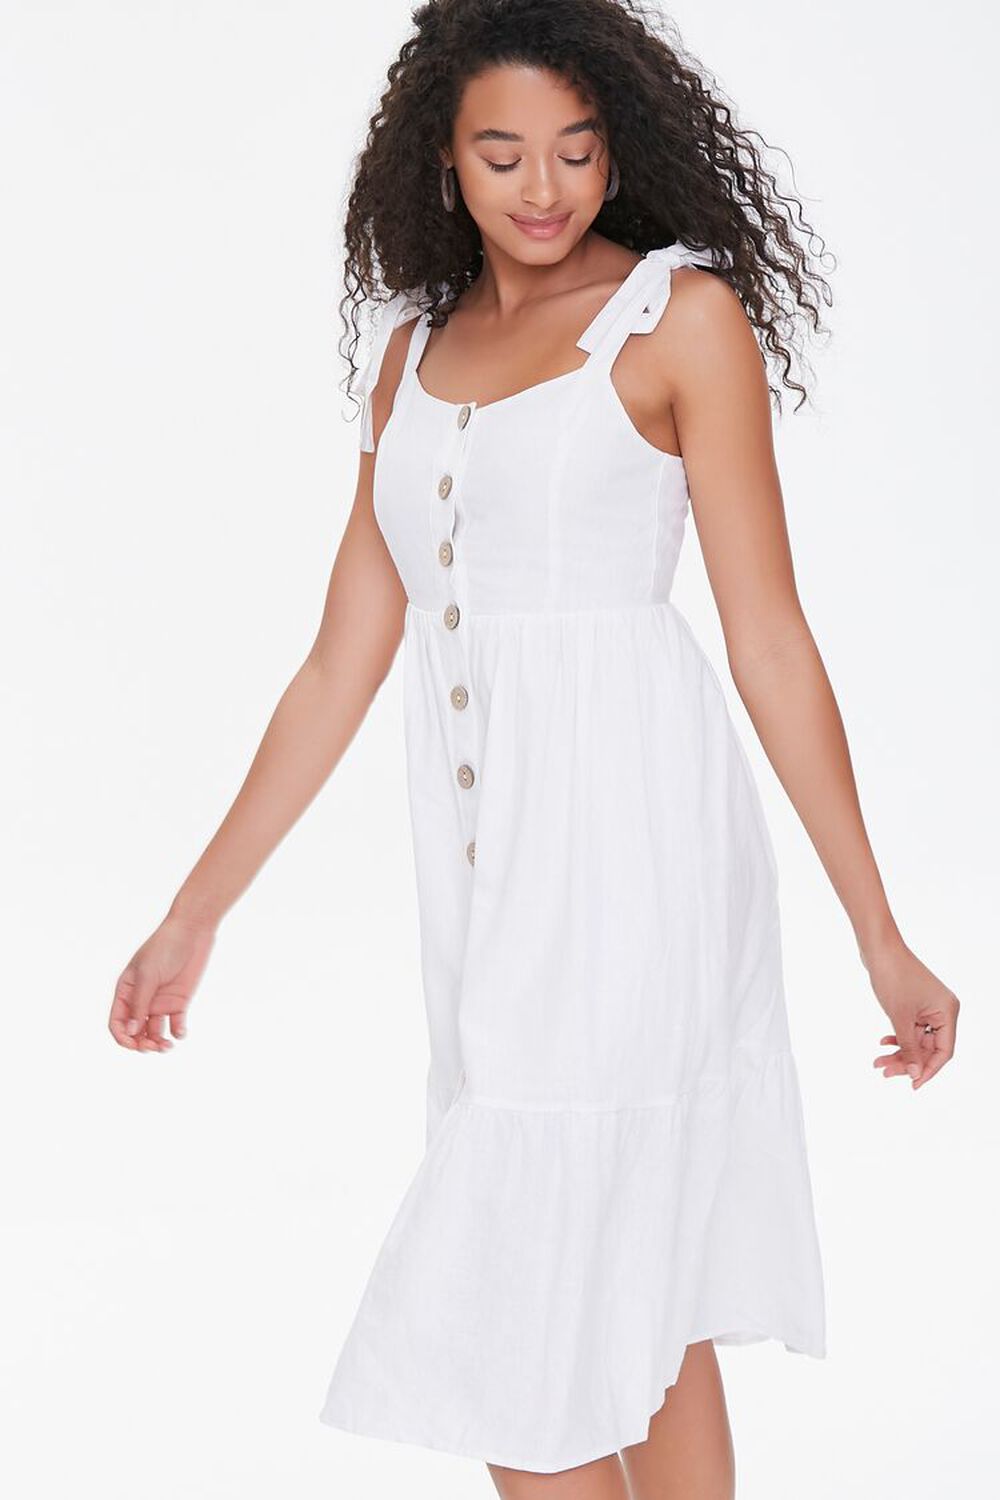 WHITE Buttoned Self-Tie Midi Dress, image 2